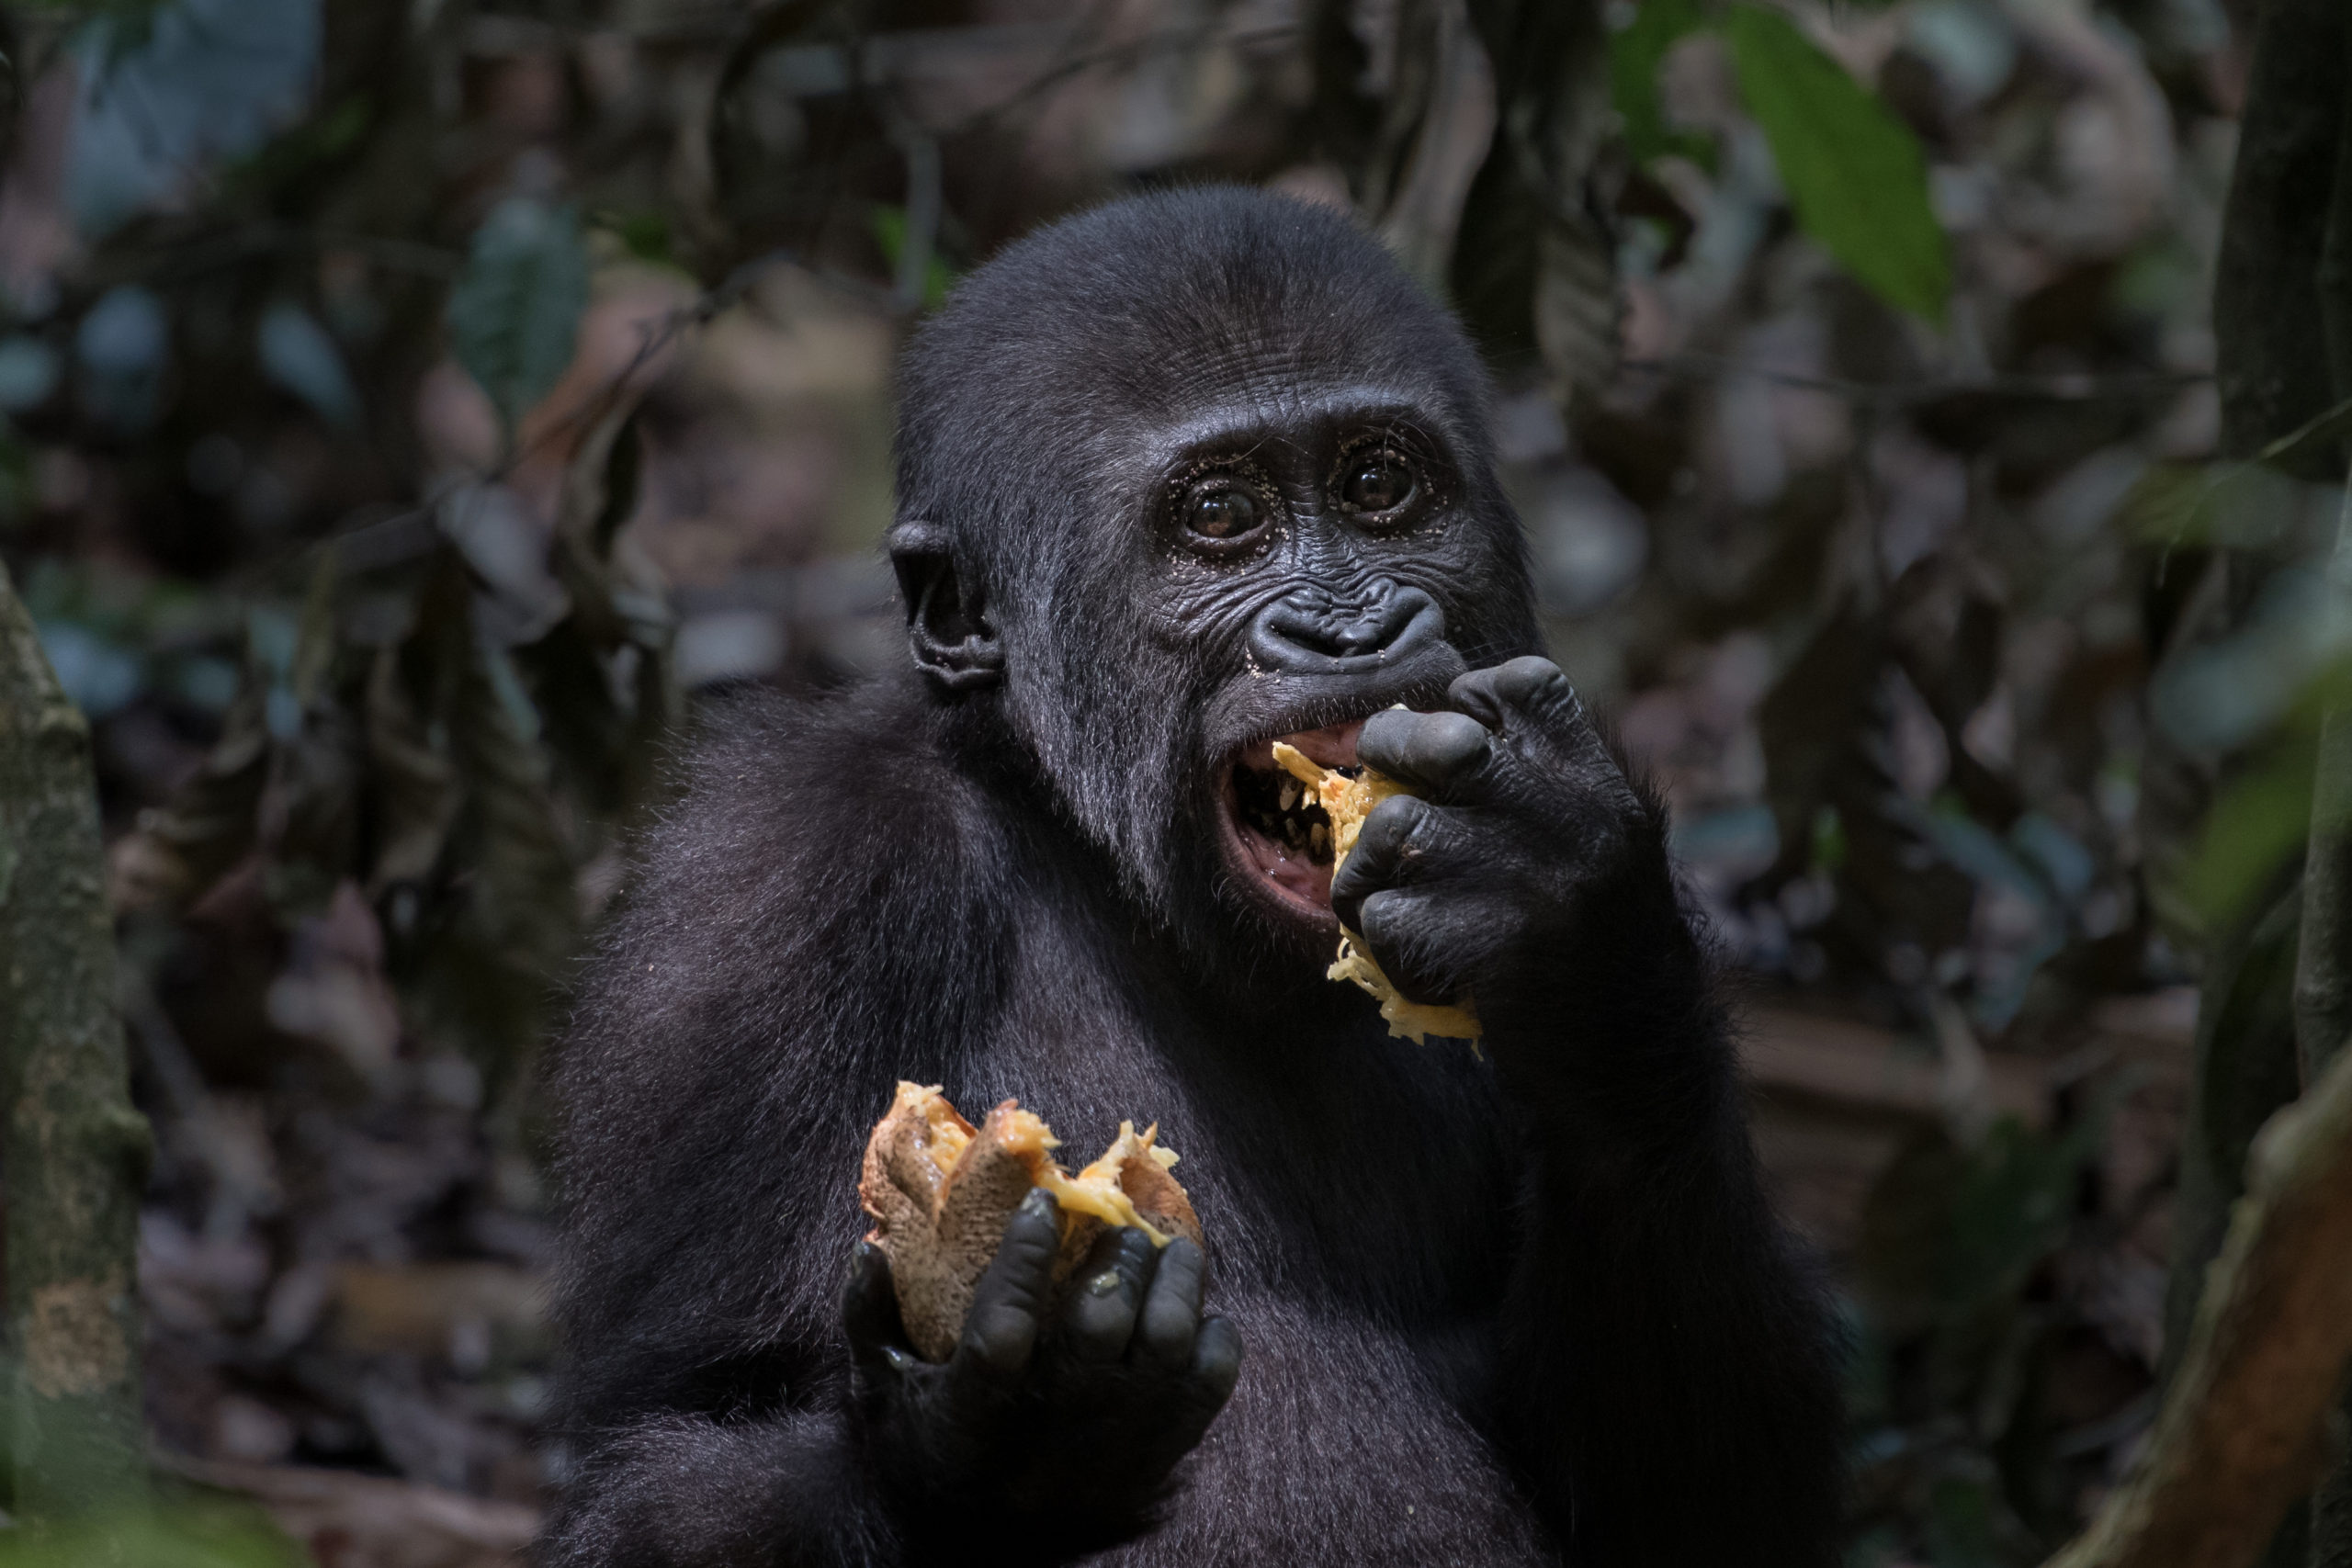 Jídelníček gorily nížinné se výrazně liší podle panující sezony. V období dešťů konzumuje více ovoce. Autor: Vít Lukáš